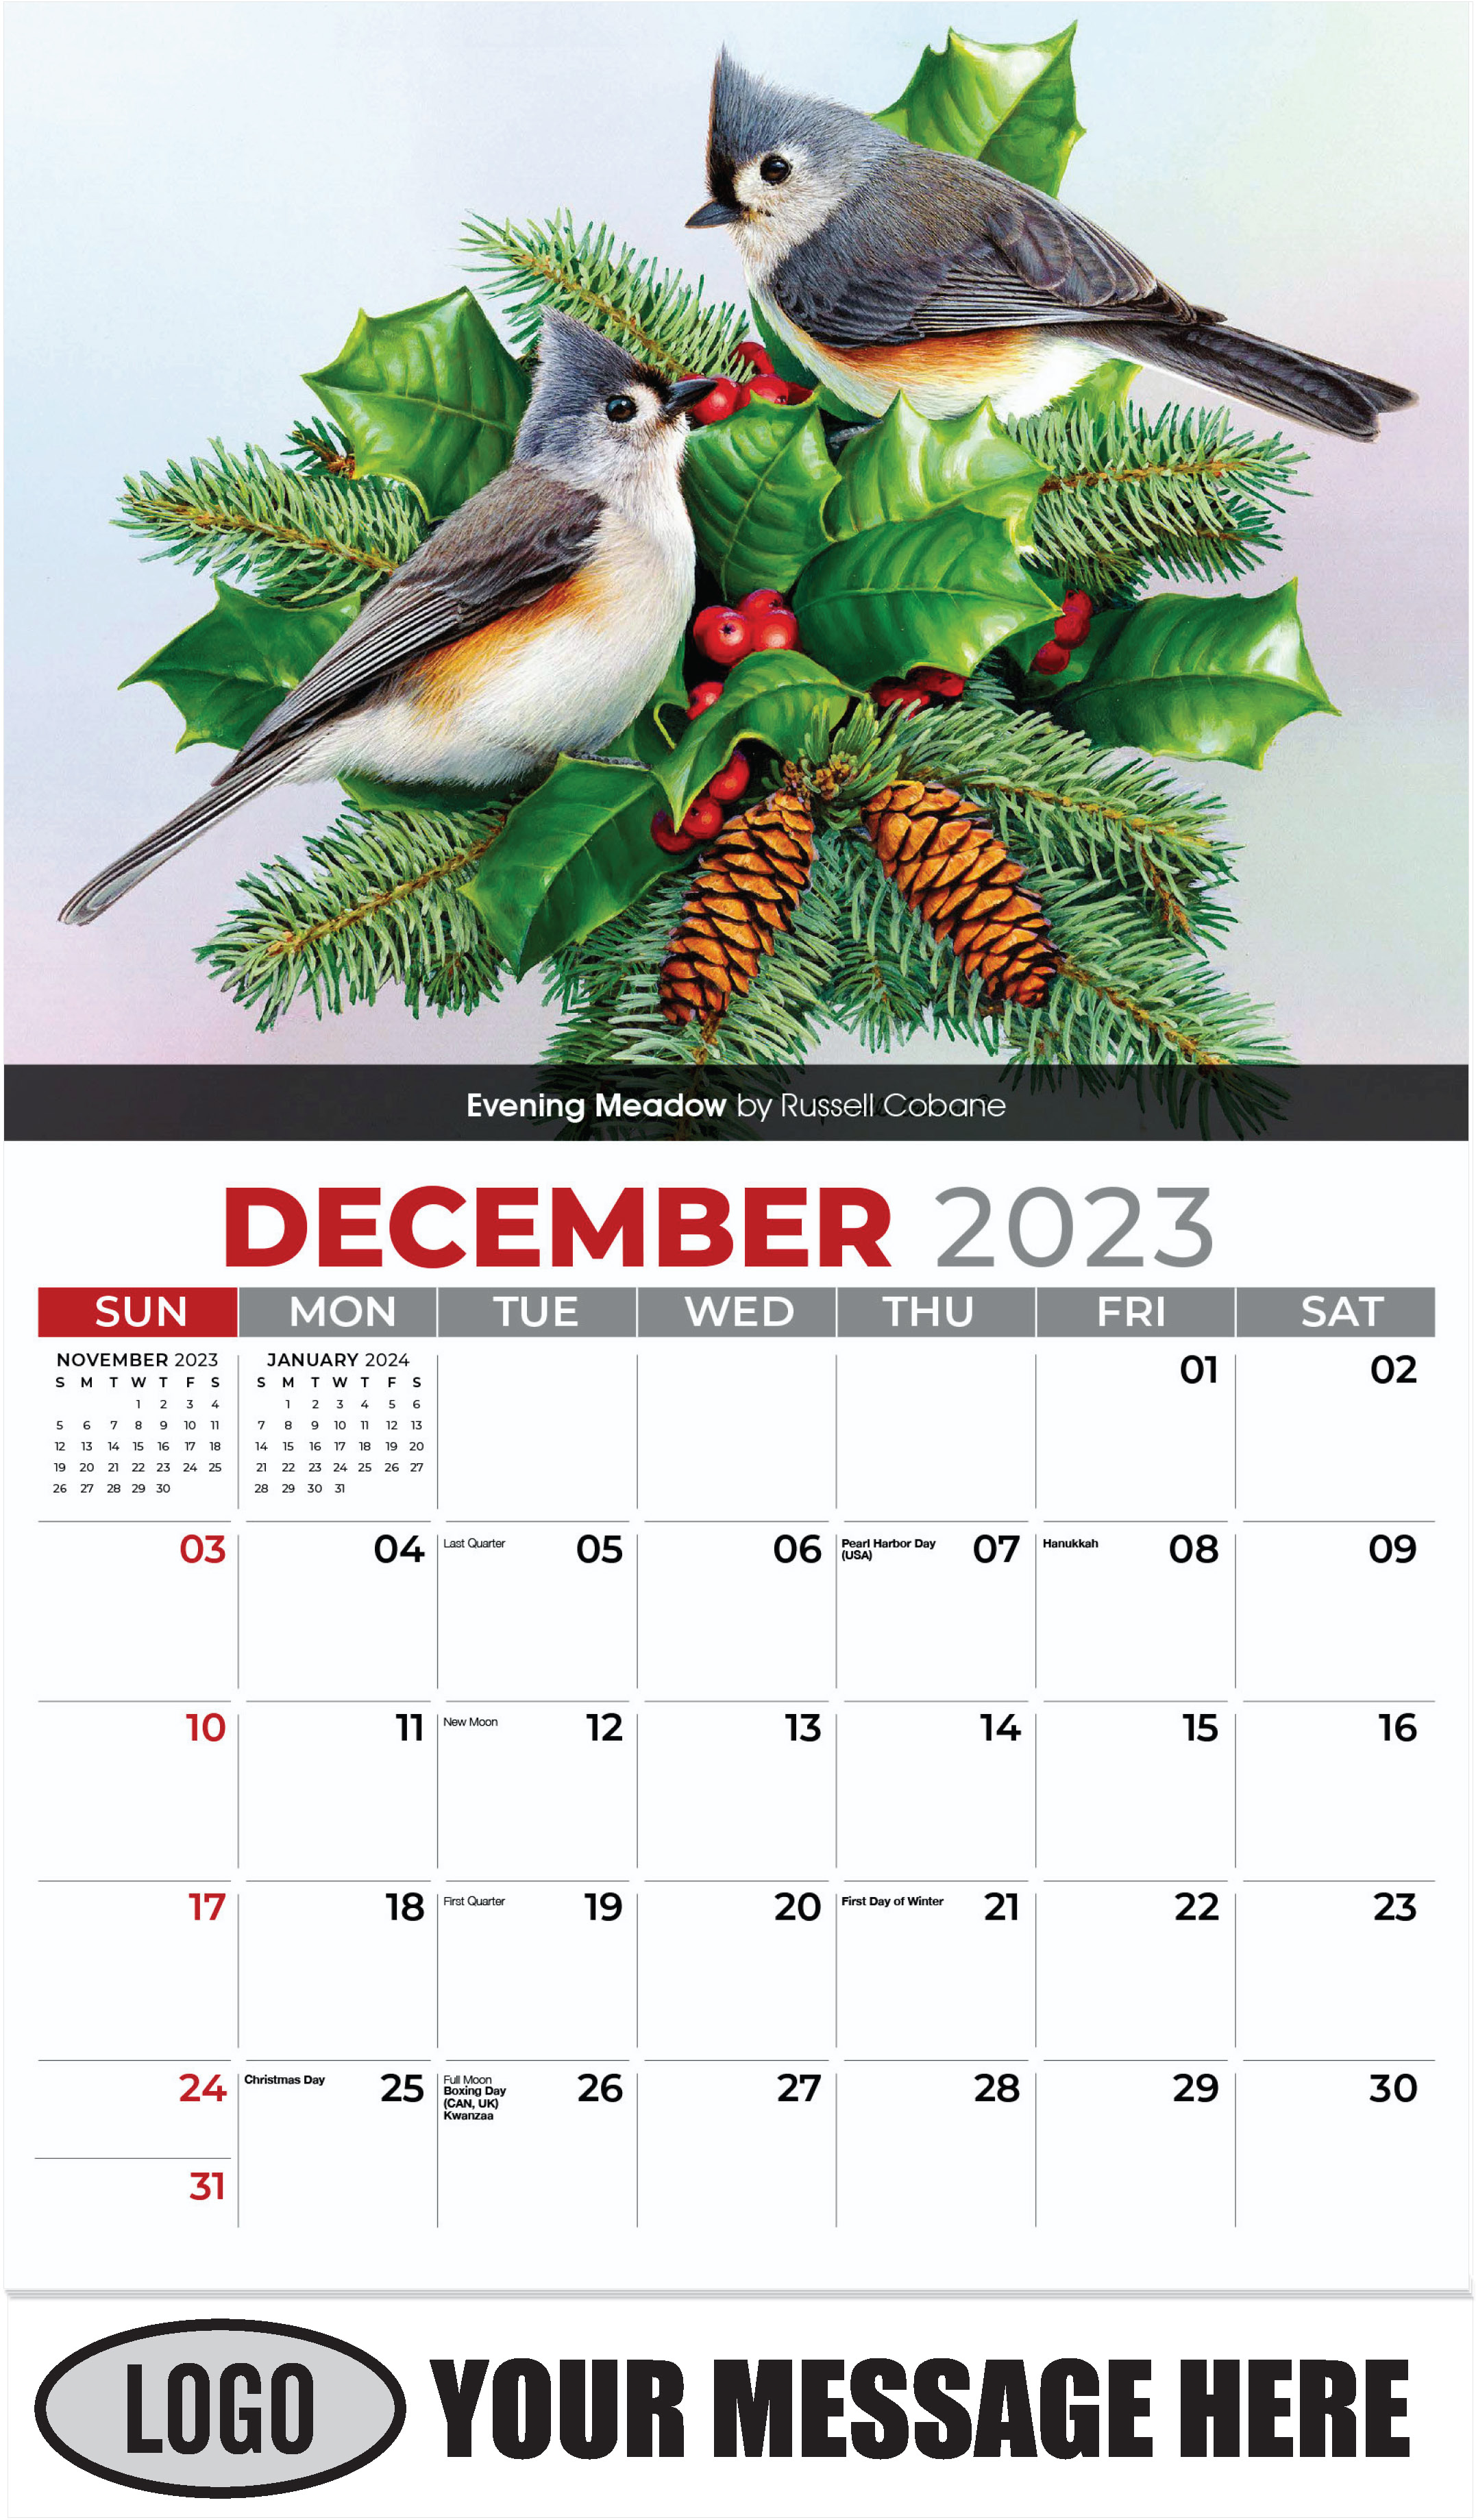 Evening Meadow by Russell Cobane - December 2023 - Garden Birds 2023 Promotional Calendar